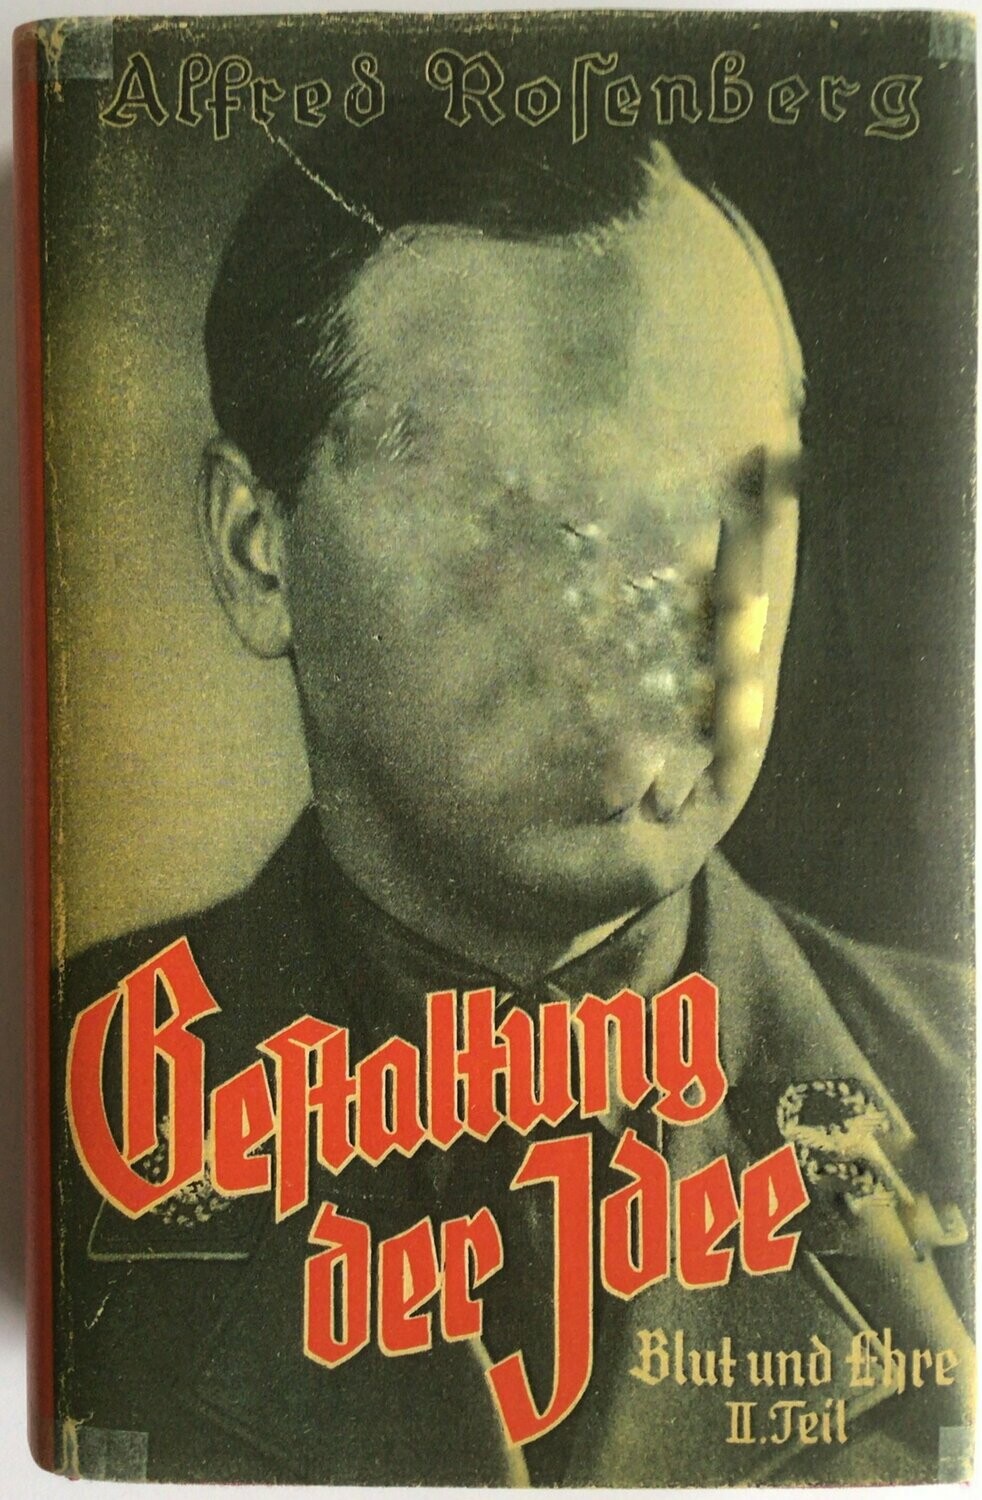 Gestaltung der Idee - Blut und Ehre Band 2 - Ganzleinenausgabe aus dem Jahr 1939 (10. Auflage) mit Schutzumschlag (Kopie)